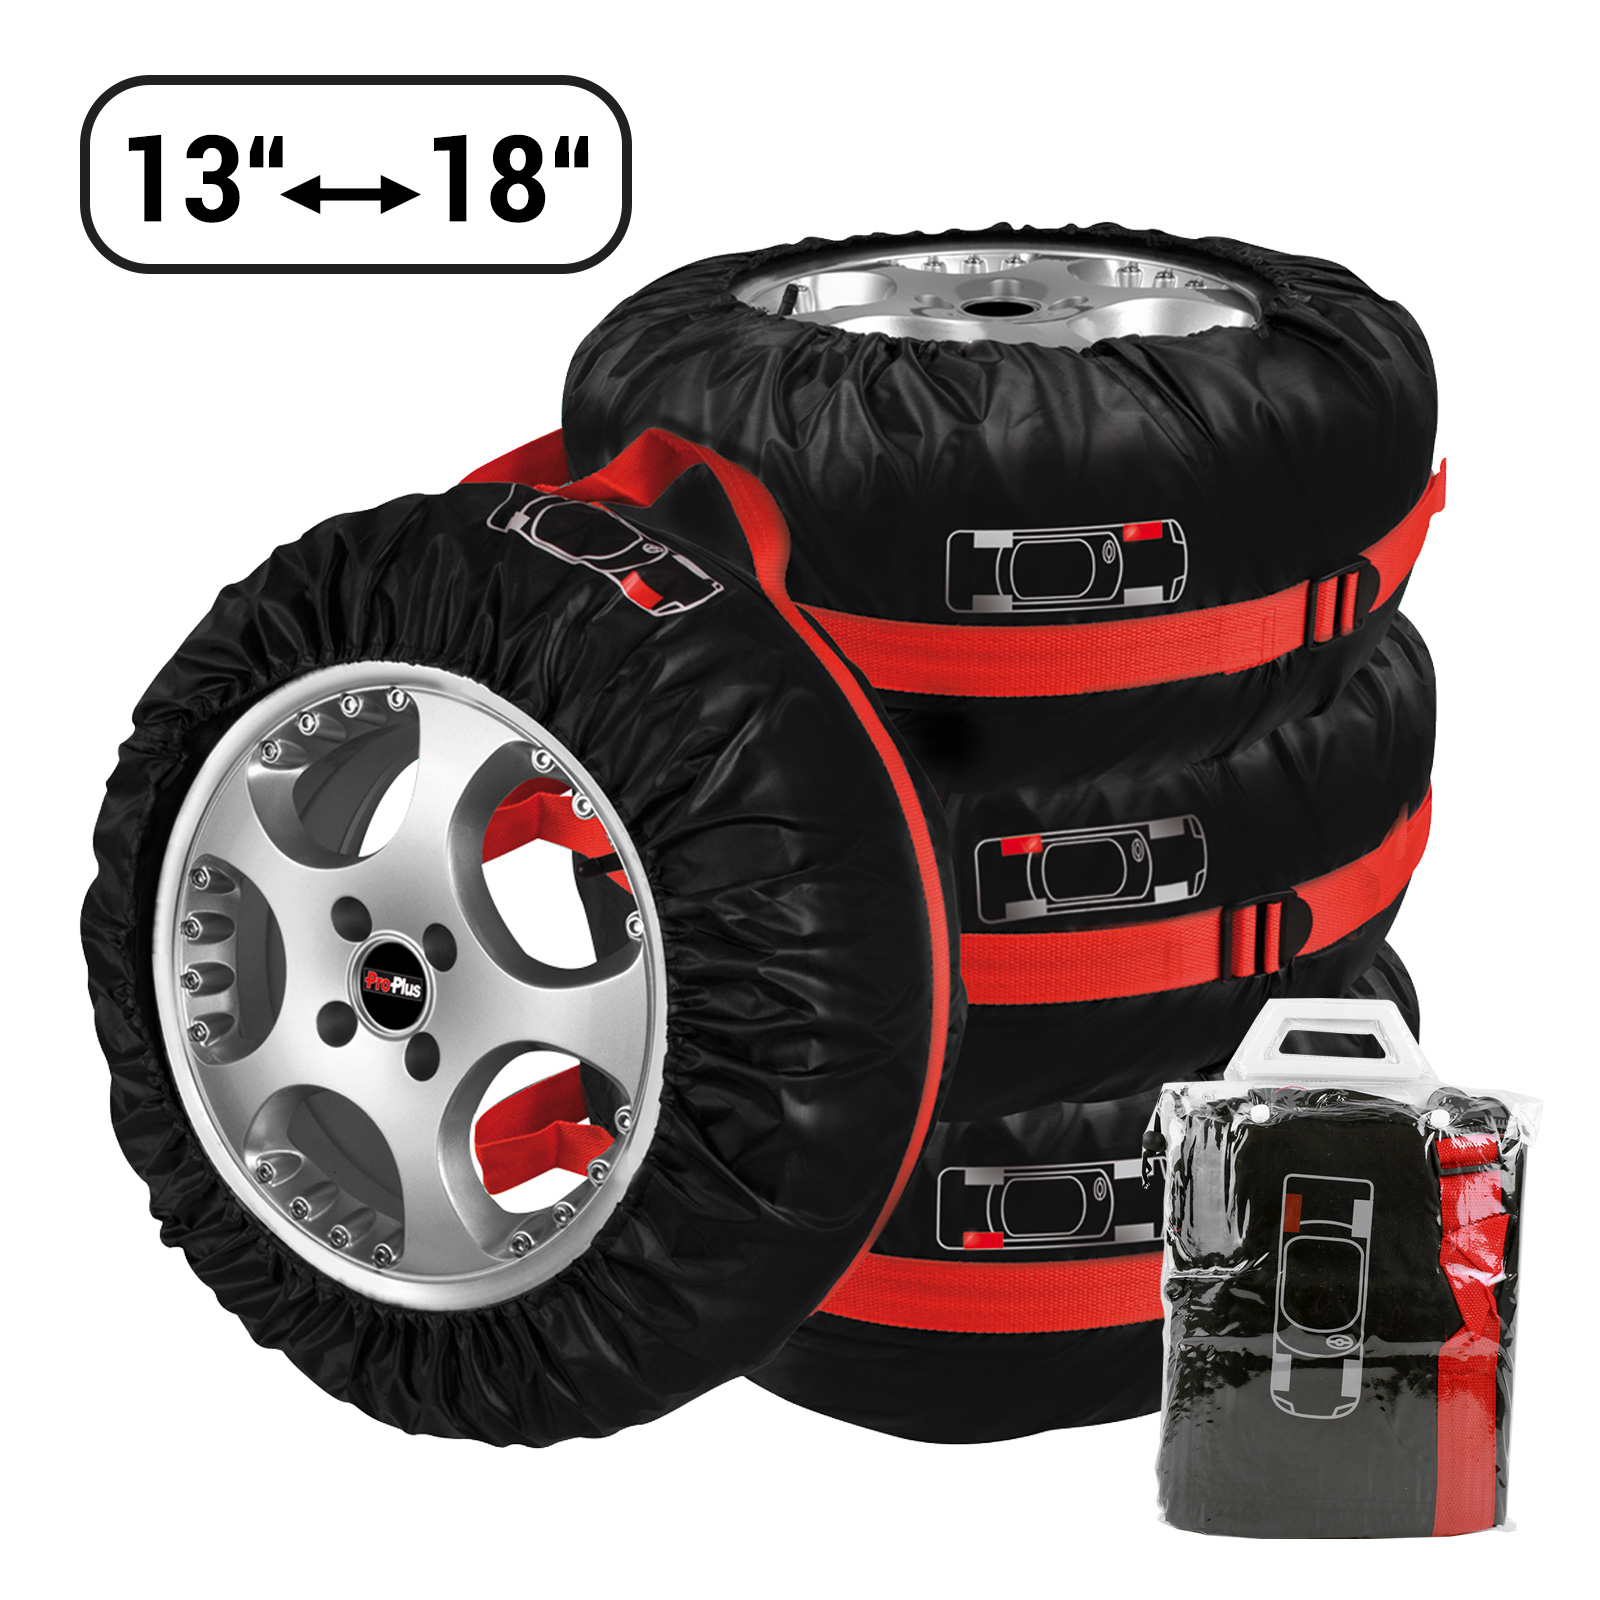 4er Set Reifen Hüllen Taschen Tragegriff Nylon max 18"; 20 Kg pro Rad